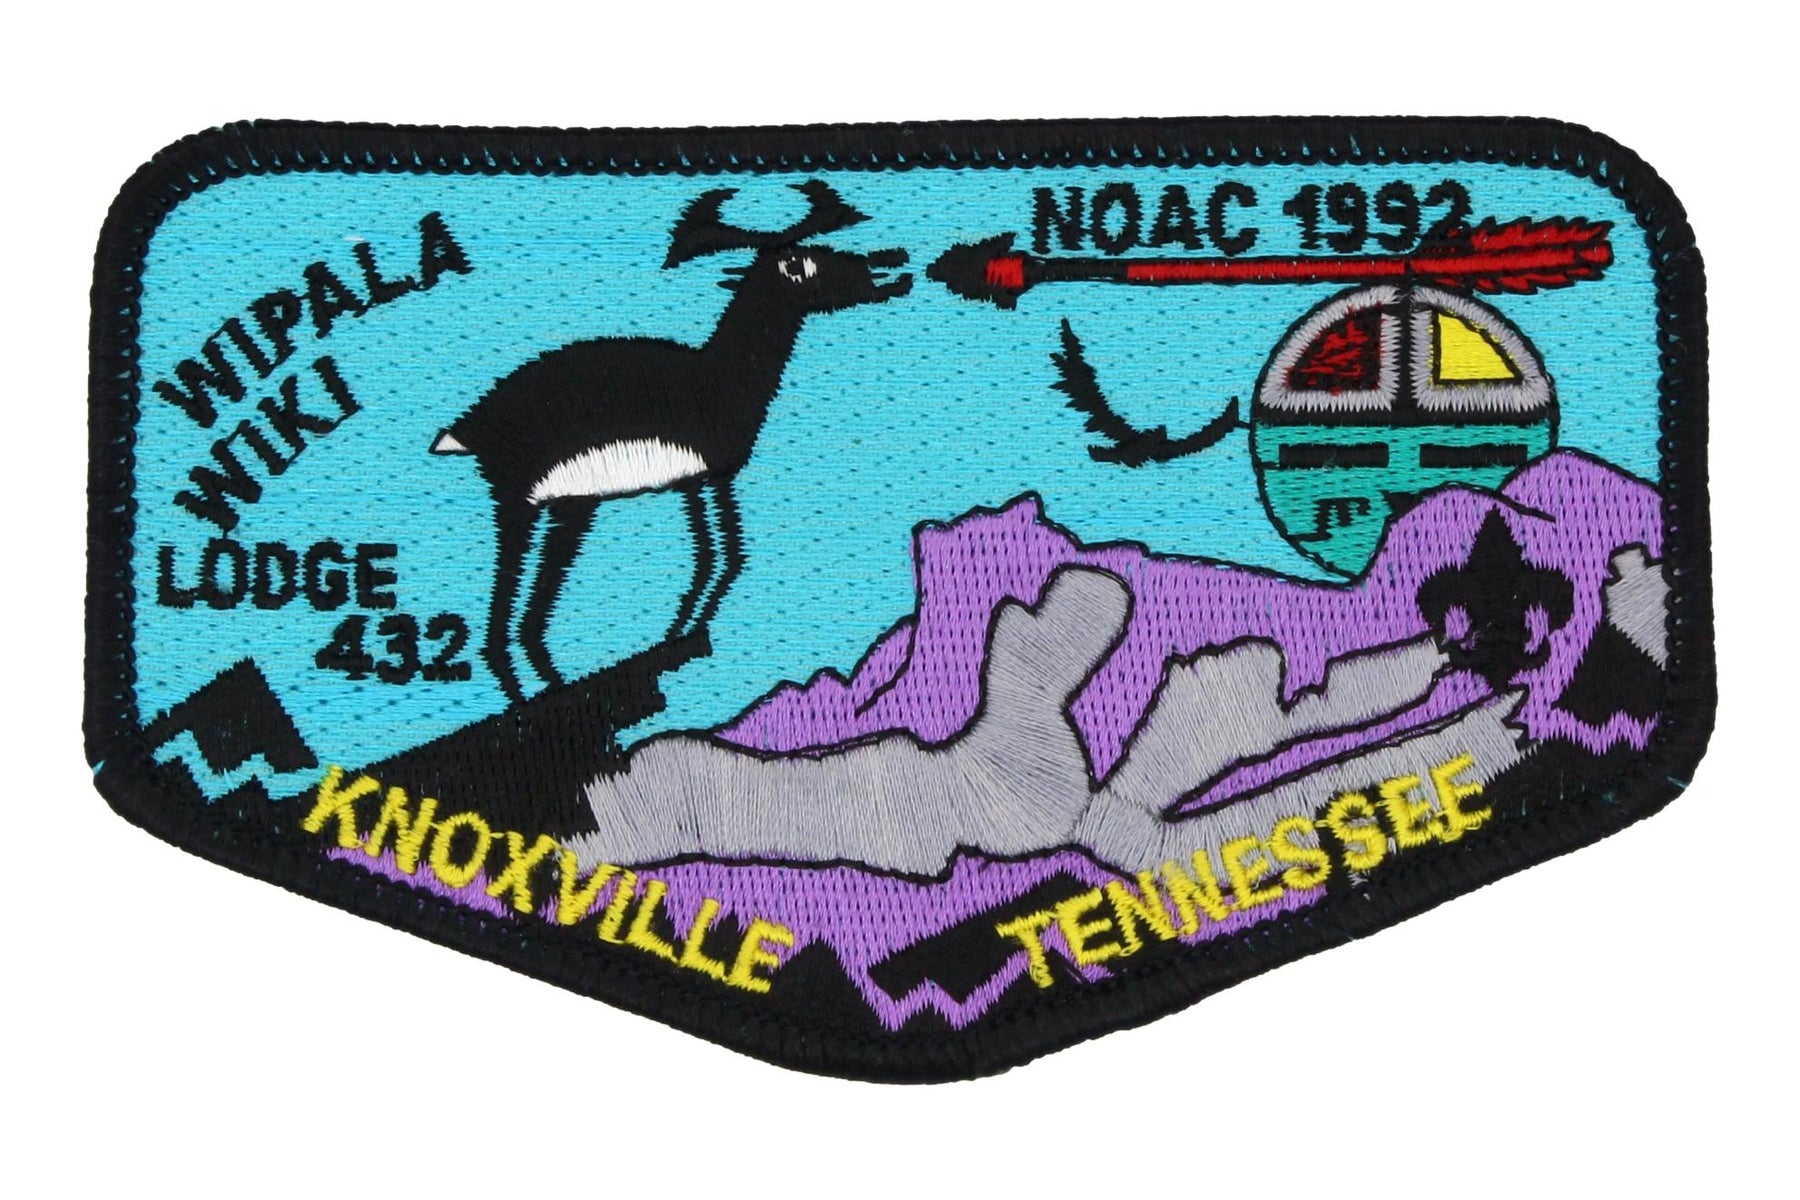 Lodge 436 Ashie Flap NOAC 1992